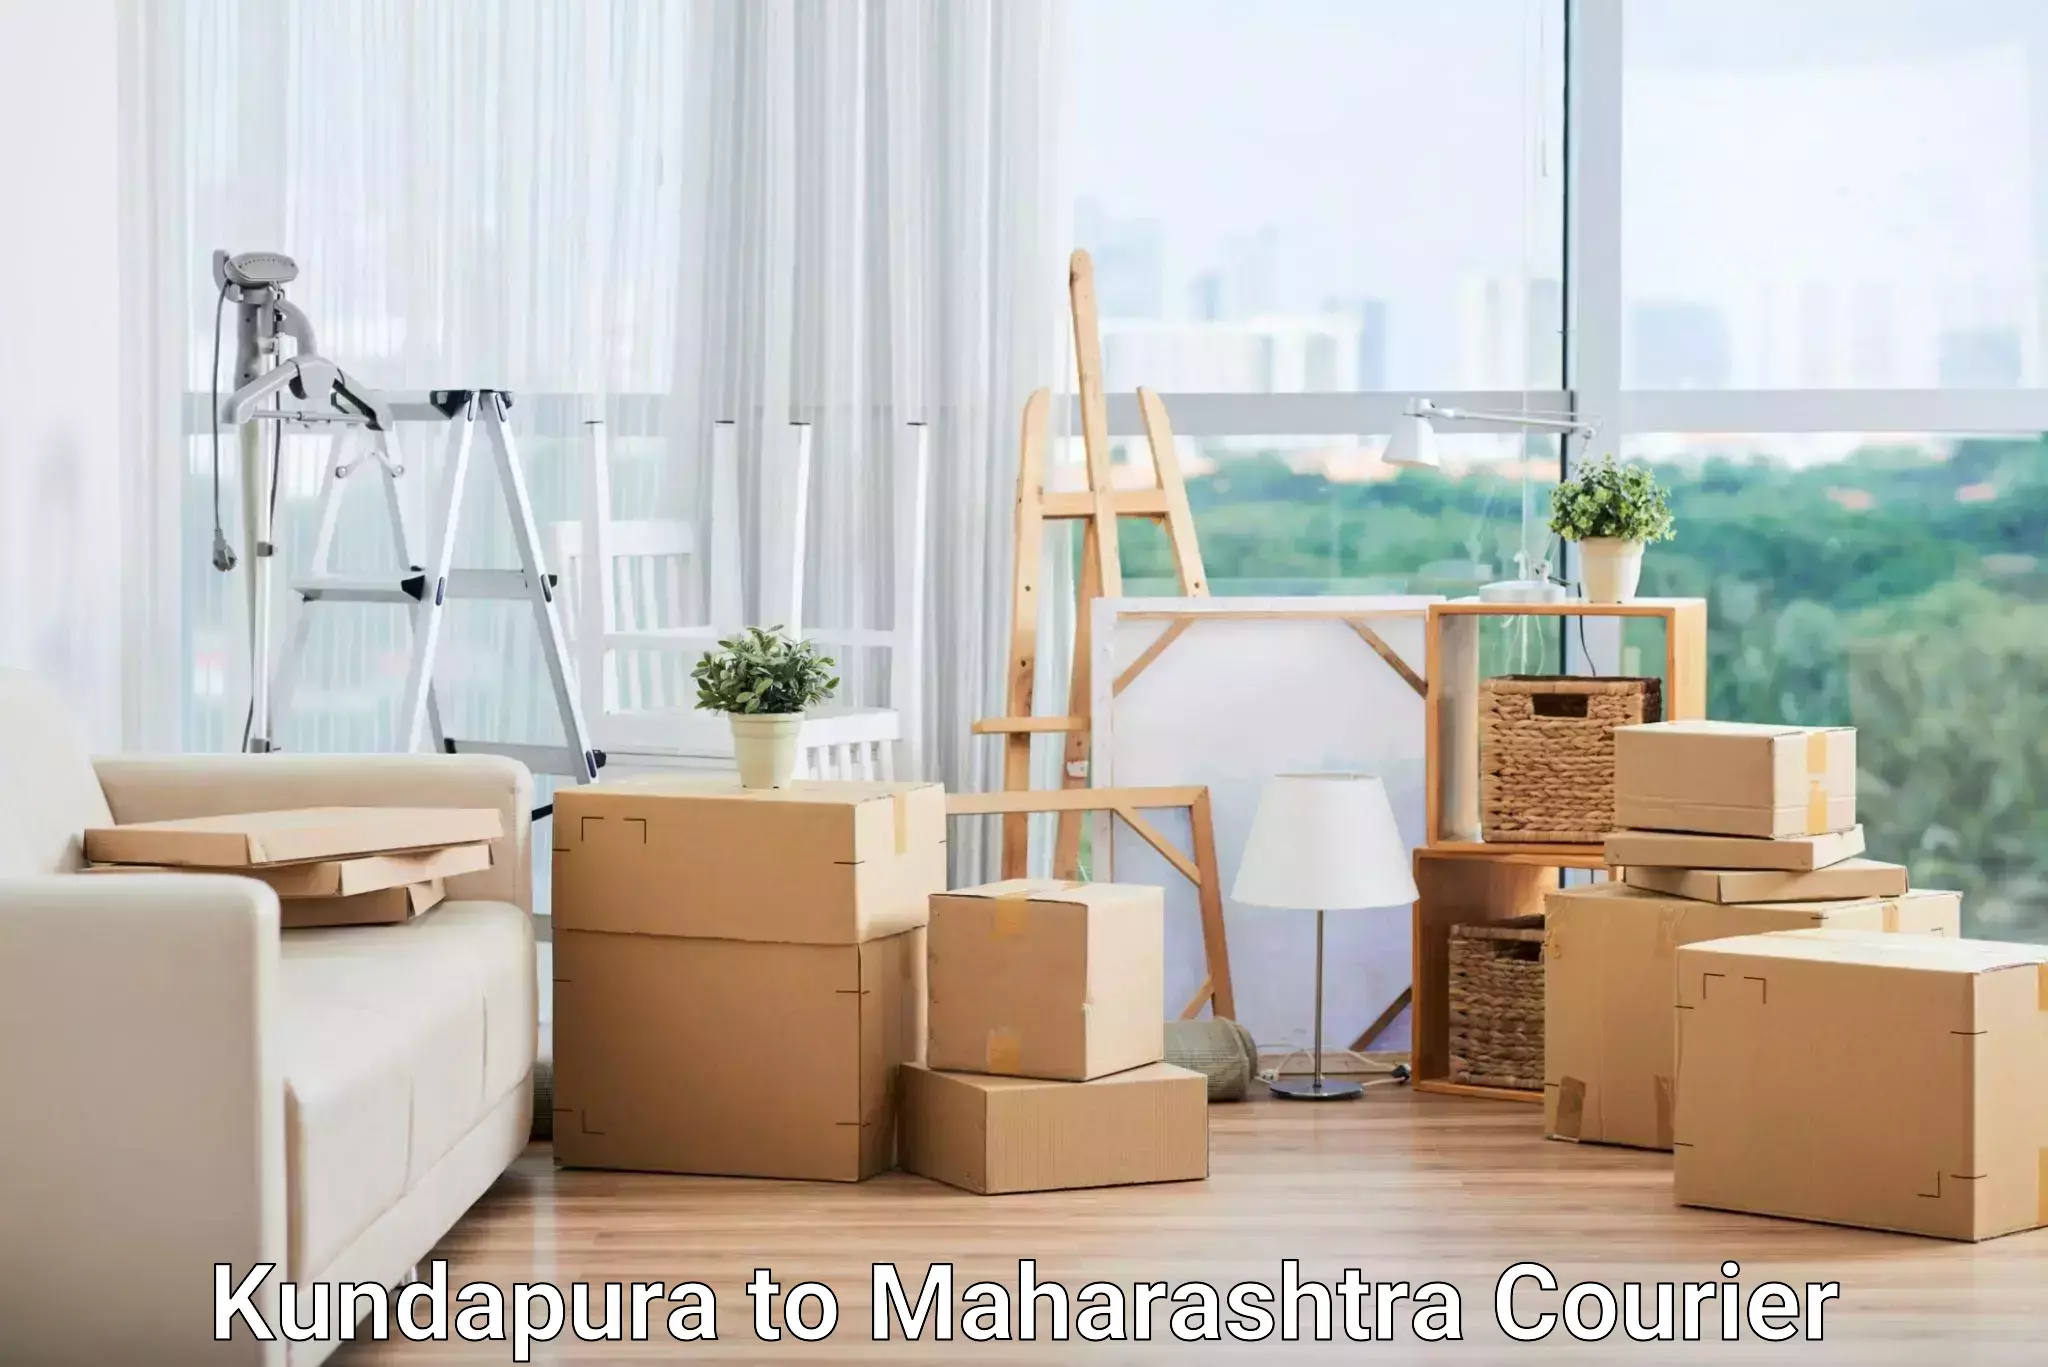 Easy return solutions Kundapura to Maharashtra